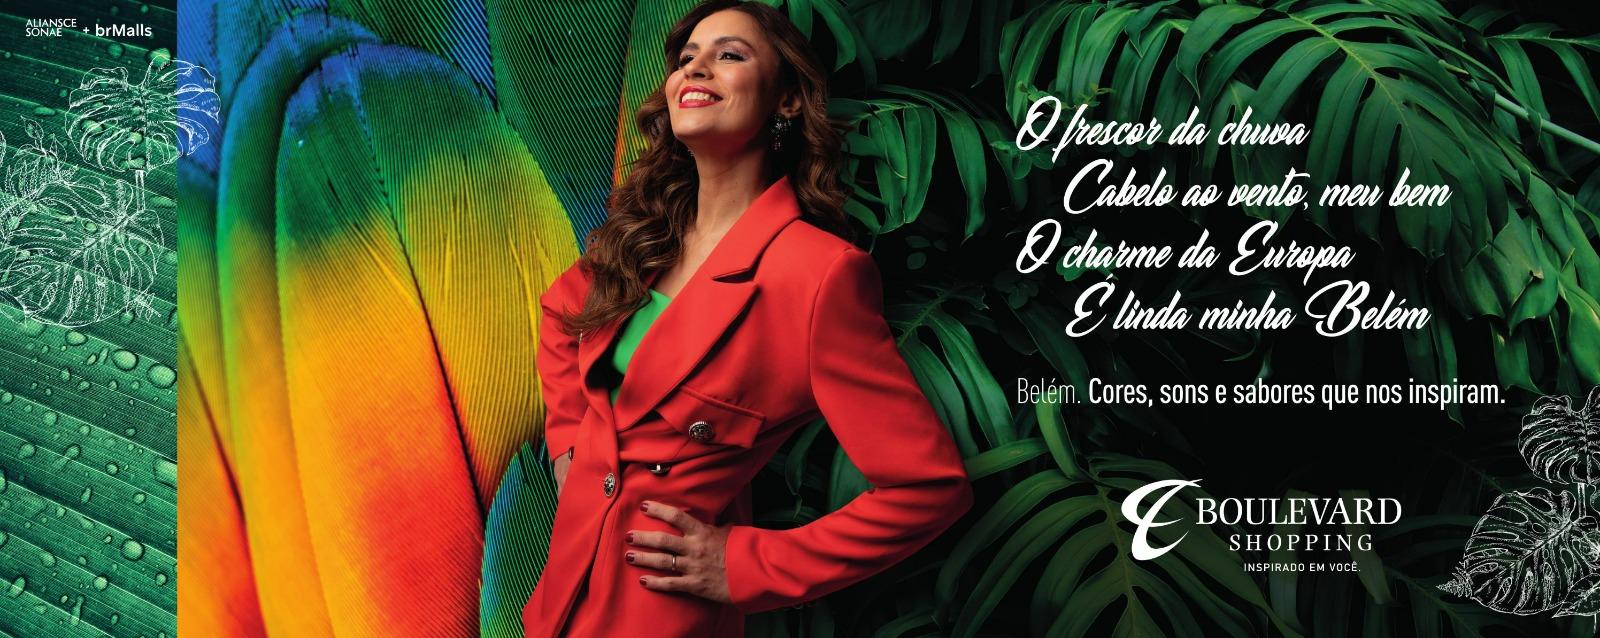 Boulevard Belém apresenta nova campanha institucional, que tem como convidada a cantora Lia Sophia 